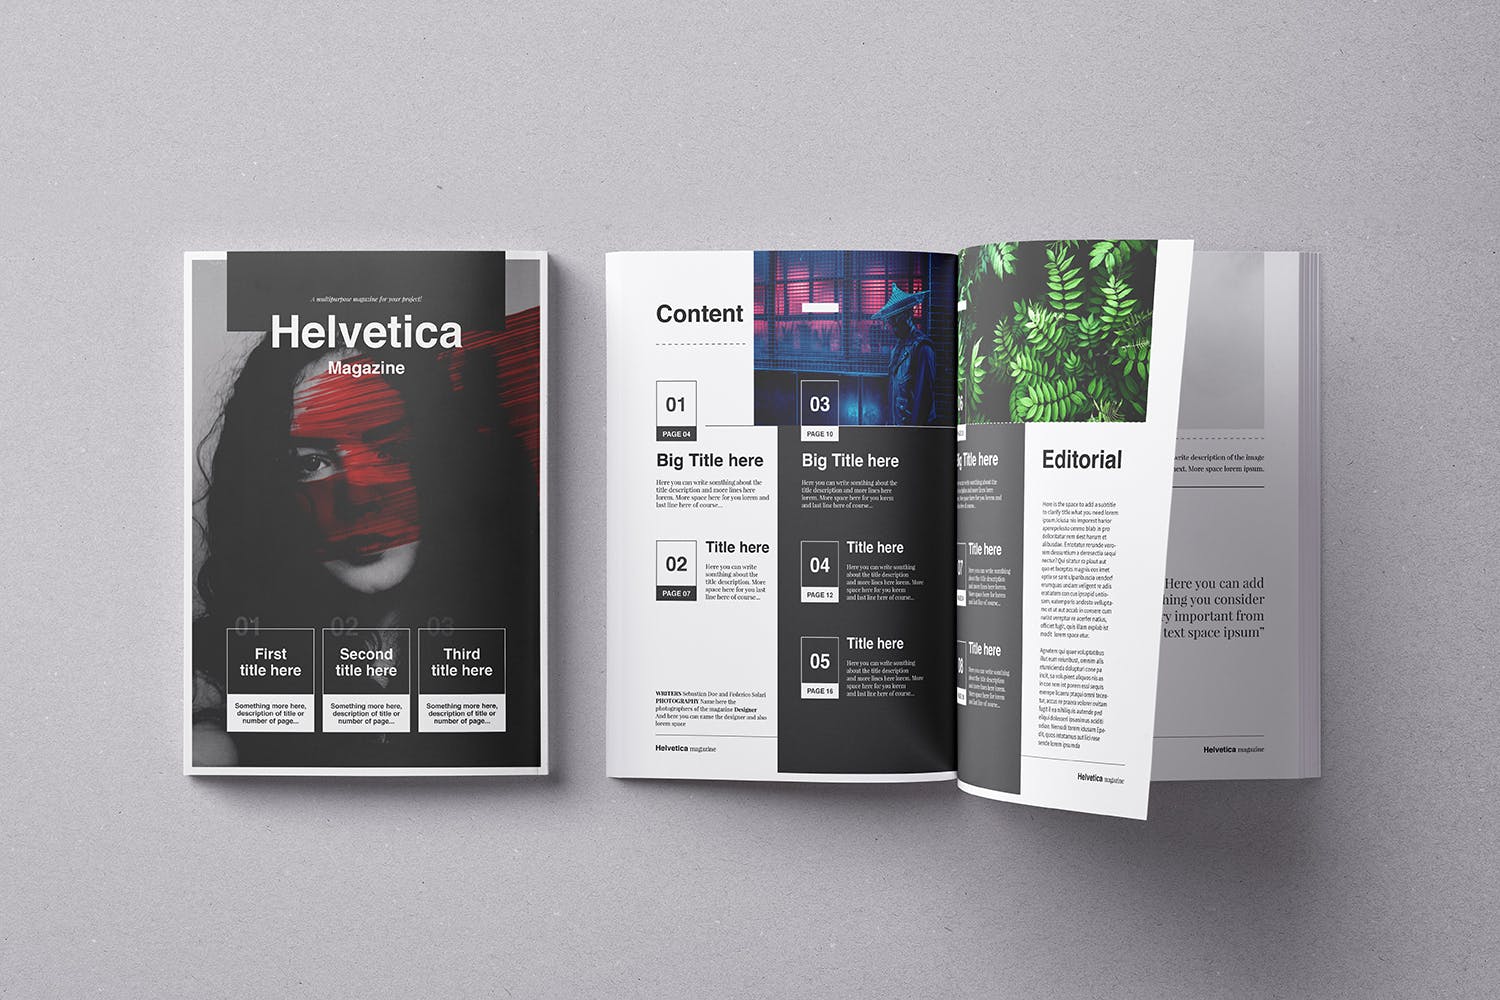 时尚行业产品评测杂志Indesign模板下载 Helvetica Magazine Indesign Template插图1